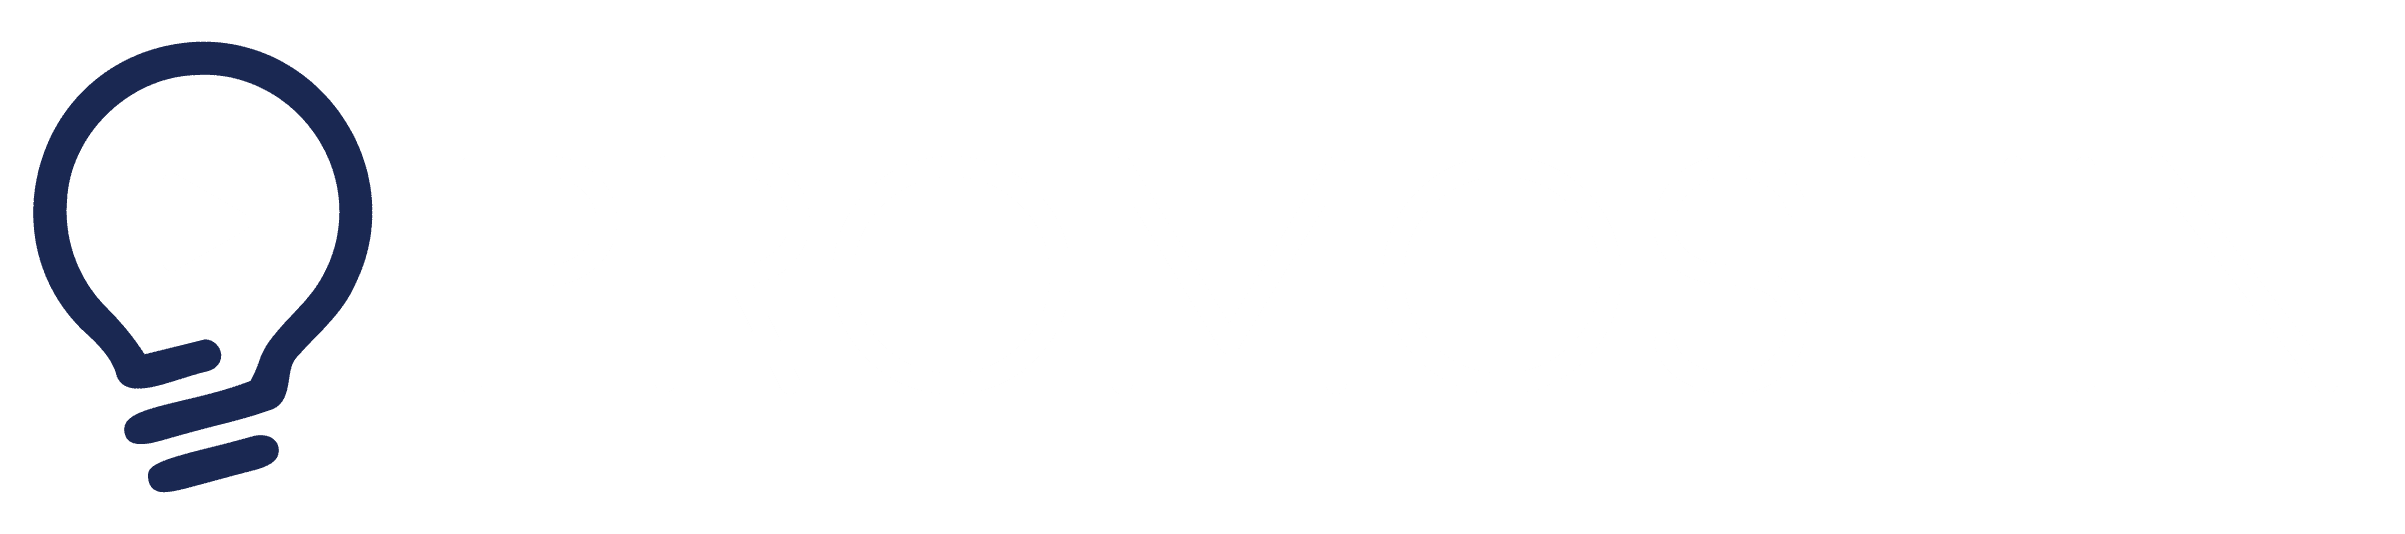 promoshin logo with white text